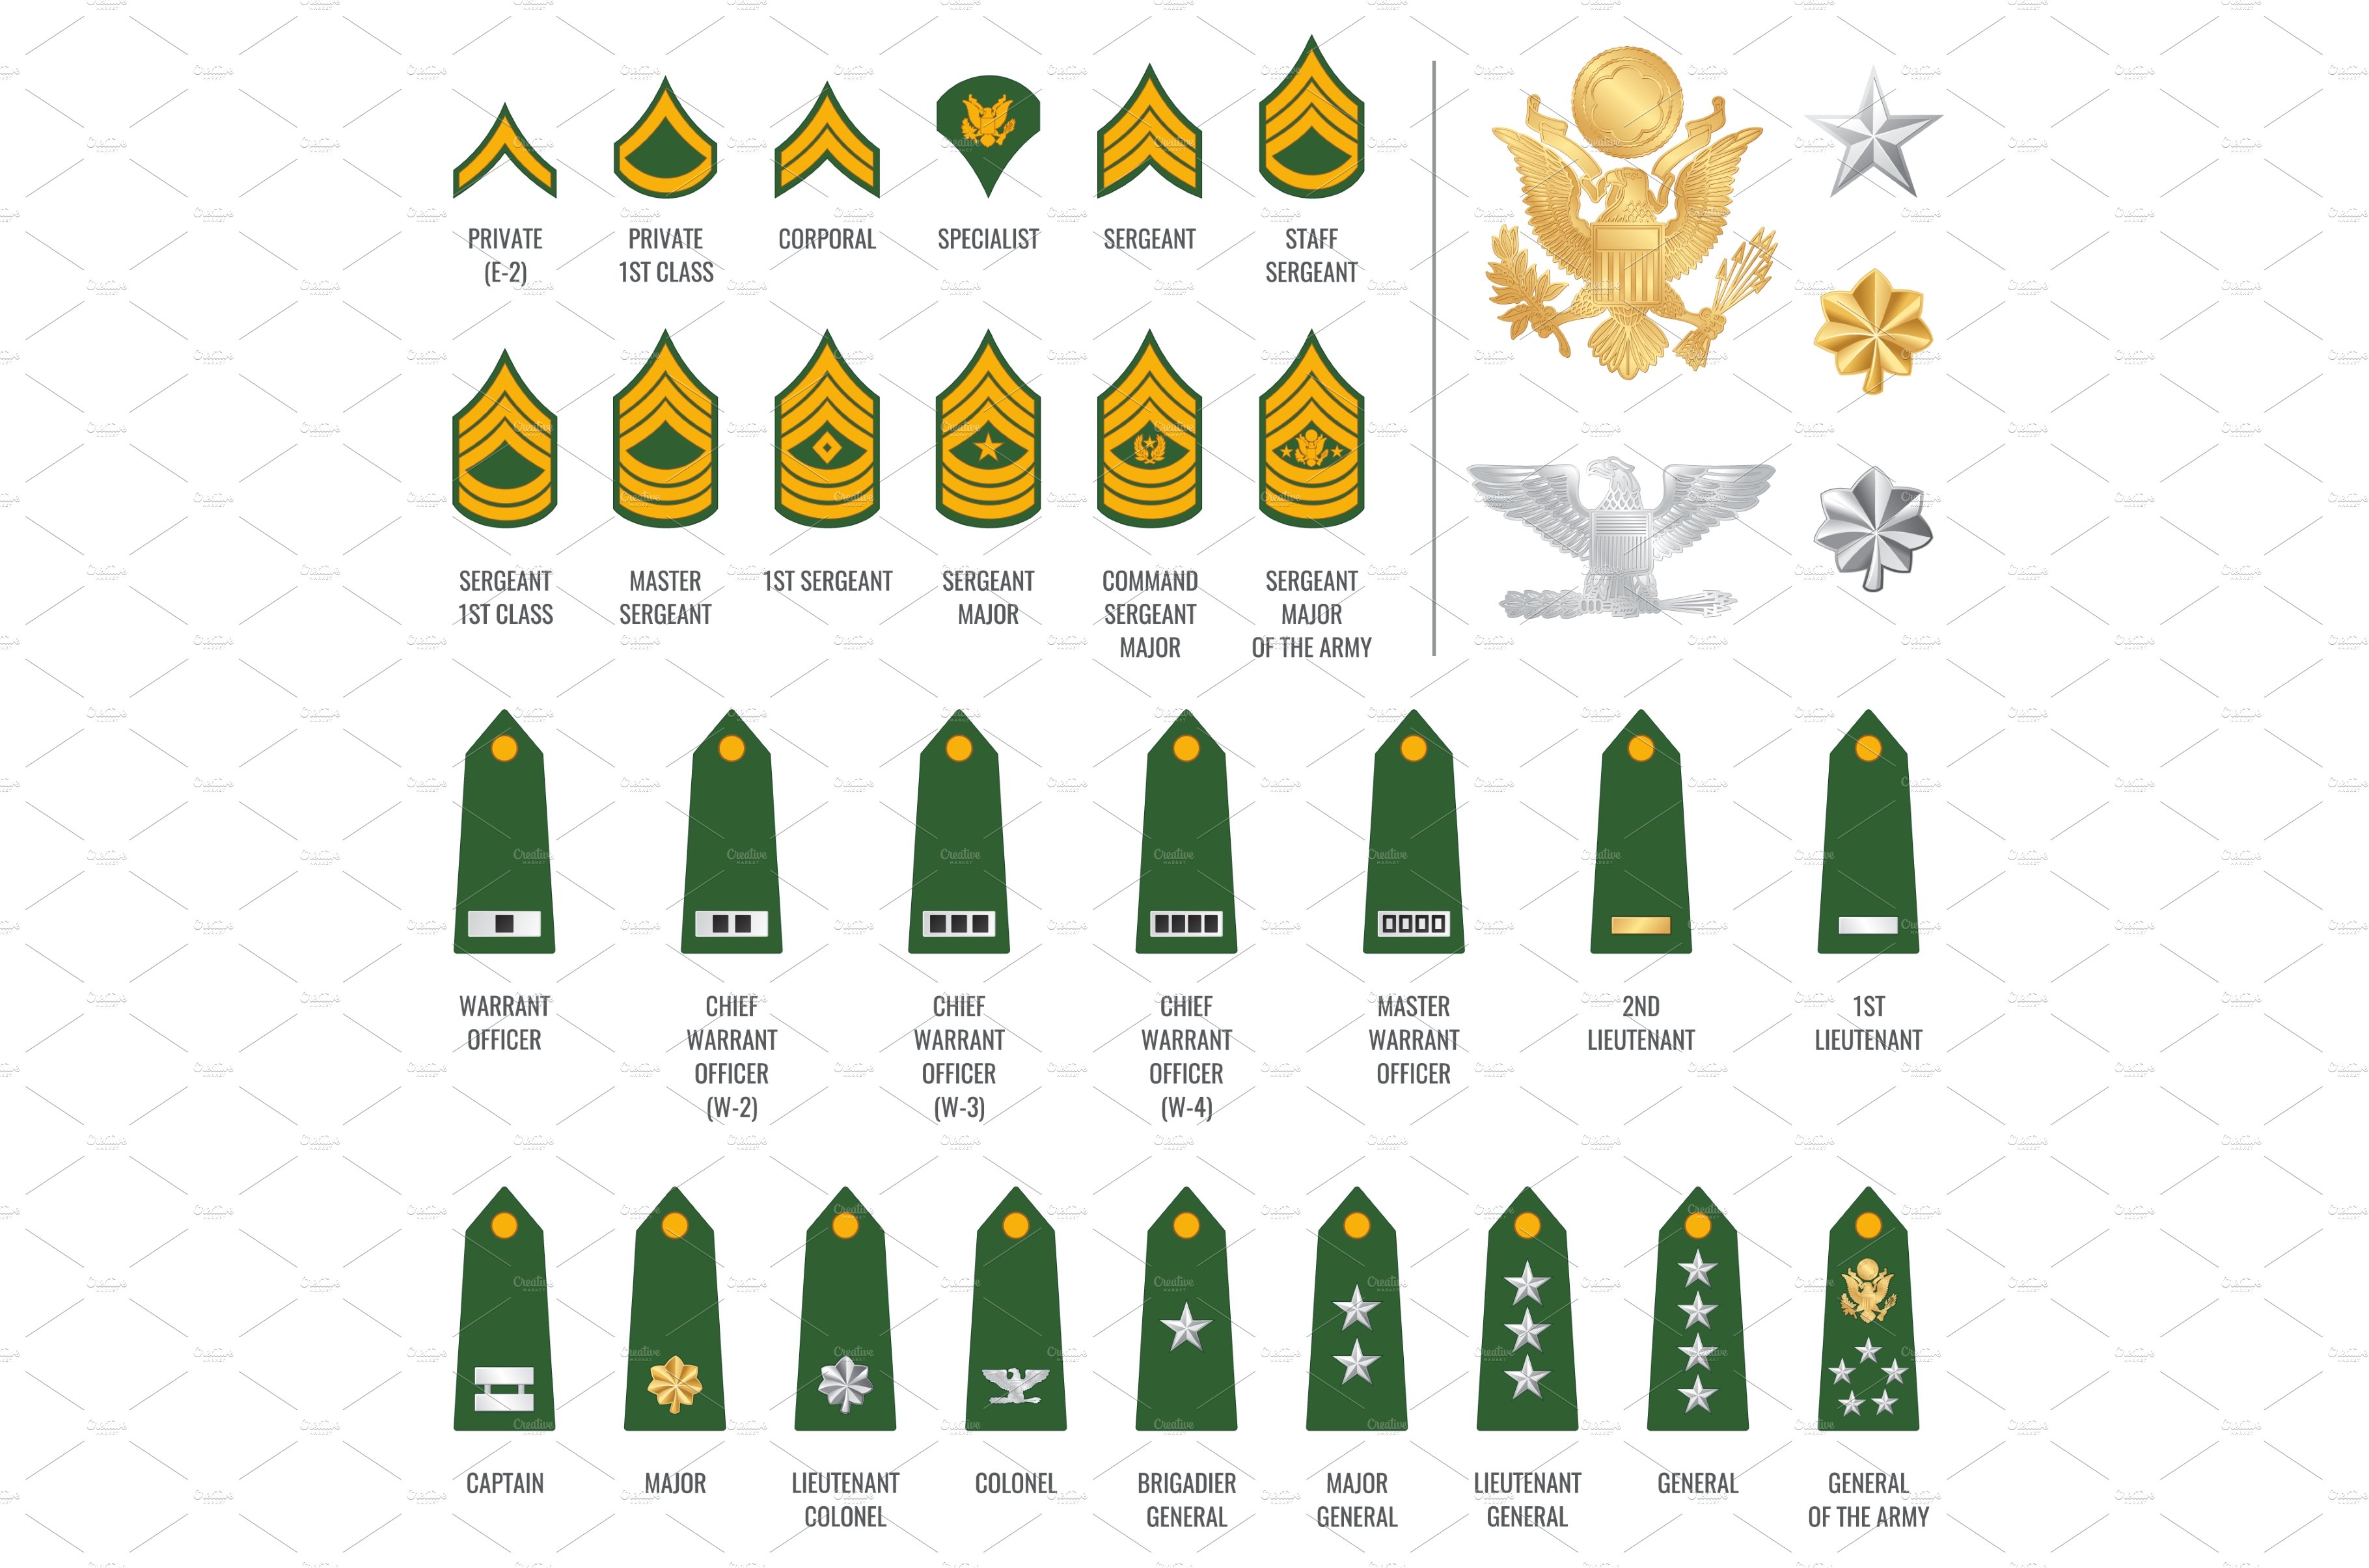 Military ranks shoulder badges cover image.